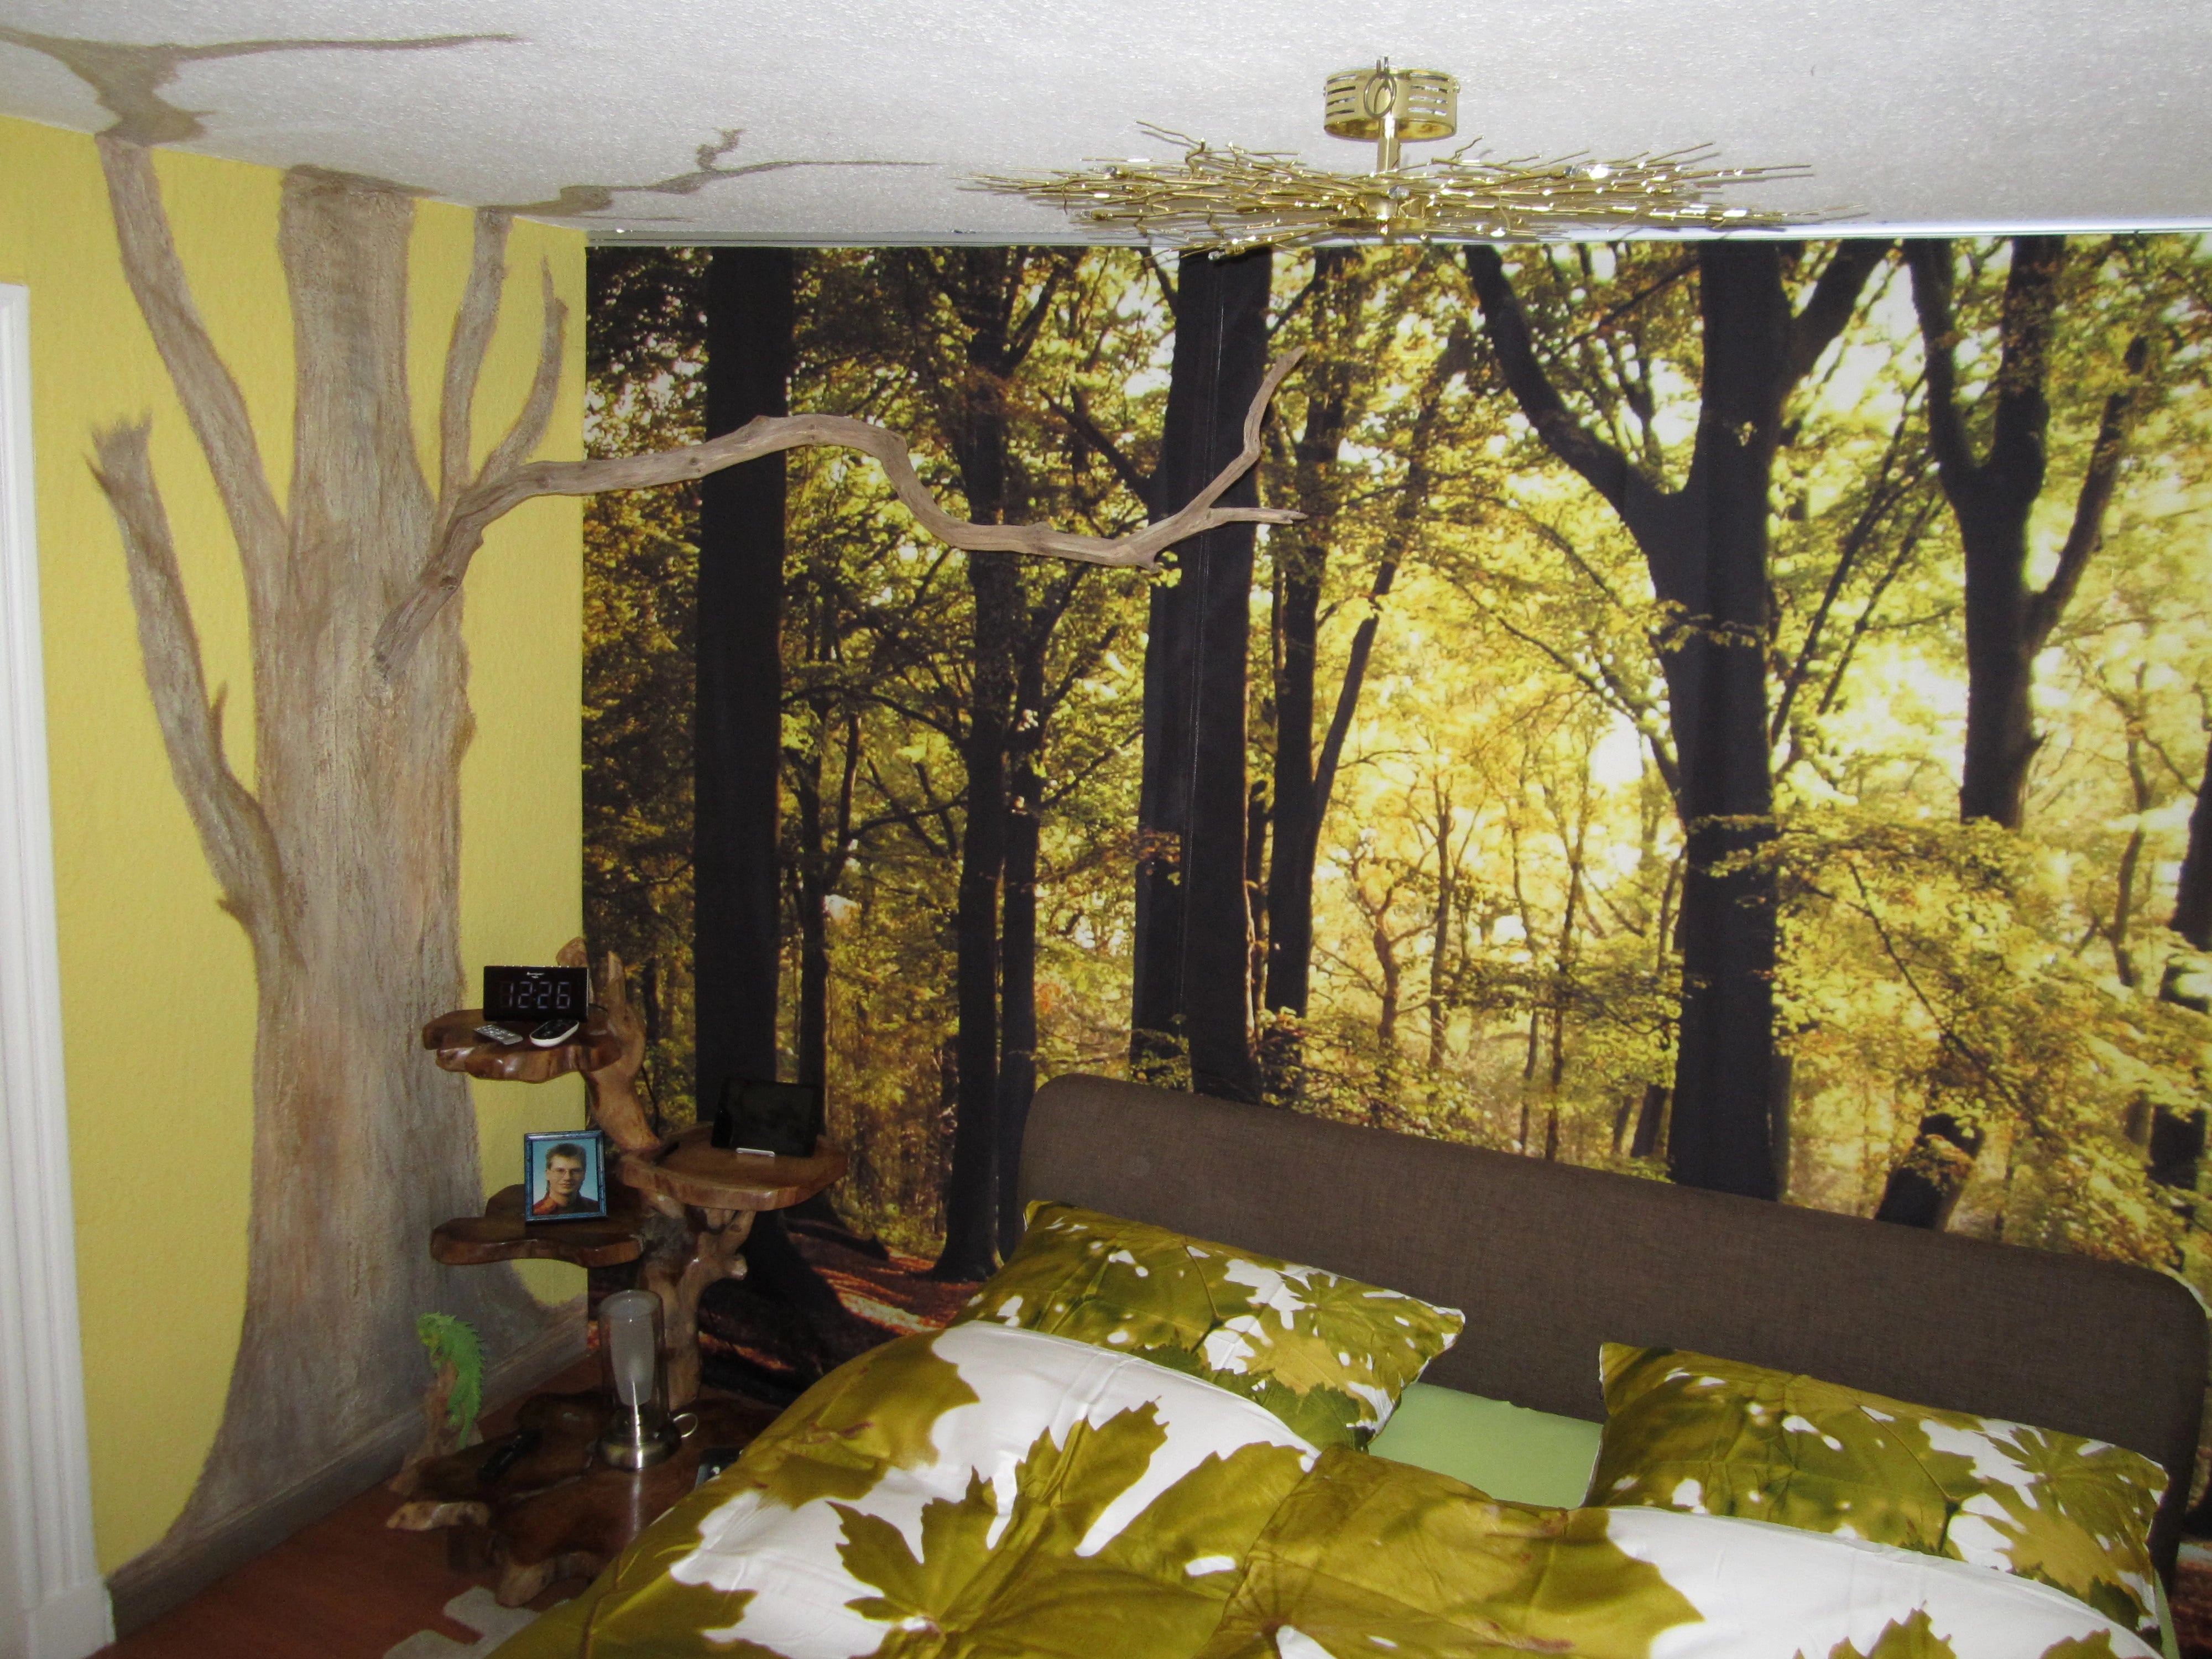 Waldmotiv auf Schiebevorhang im Schlafzimmer